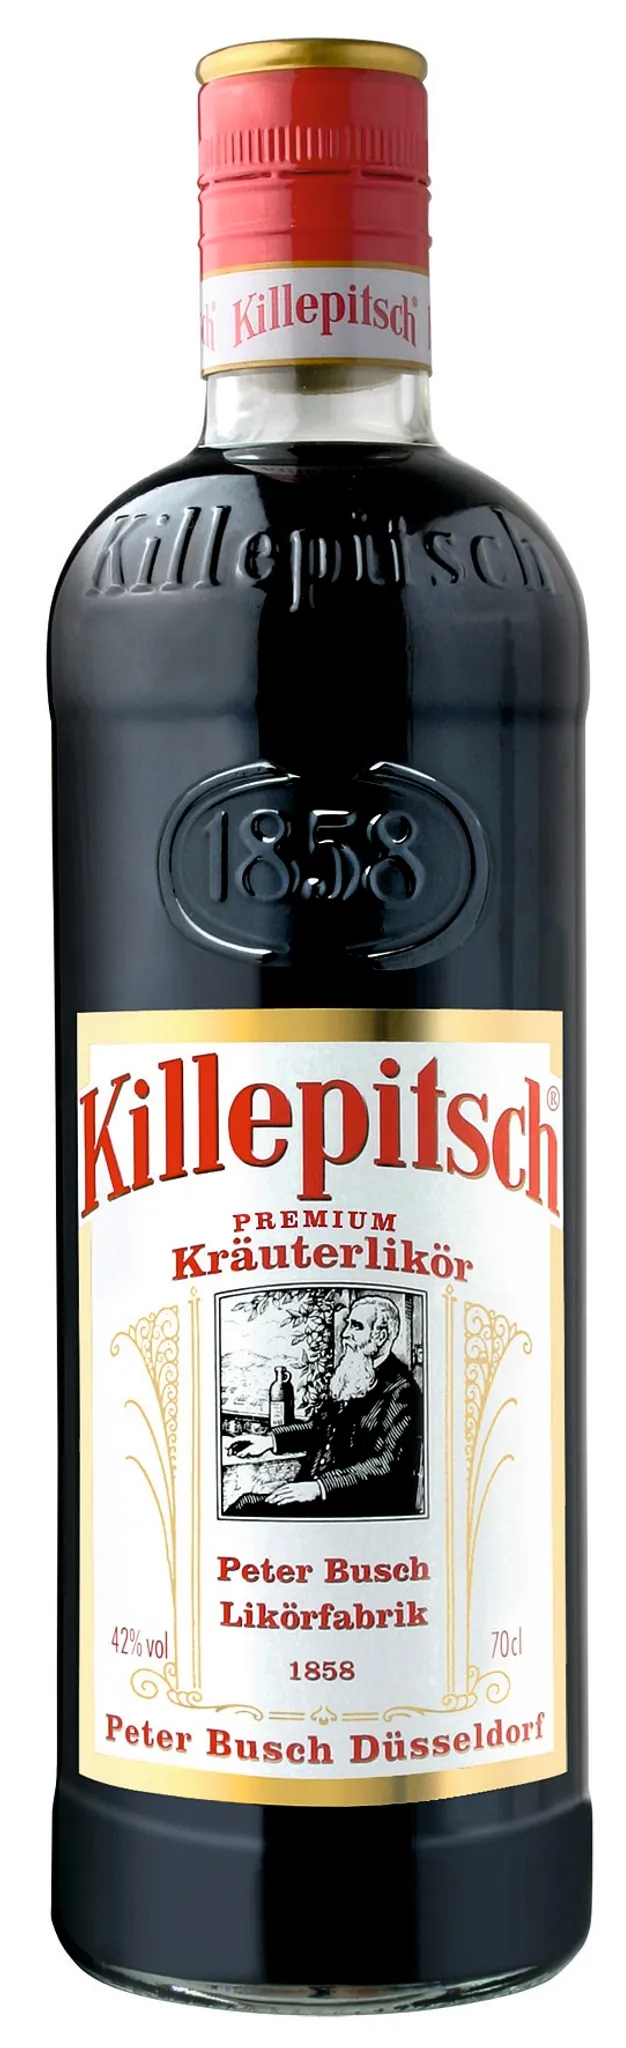 Killepitsch feiner Premium Kräuterlikör aus